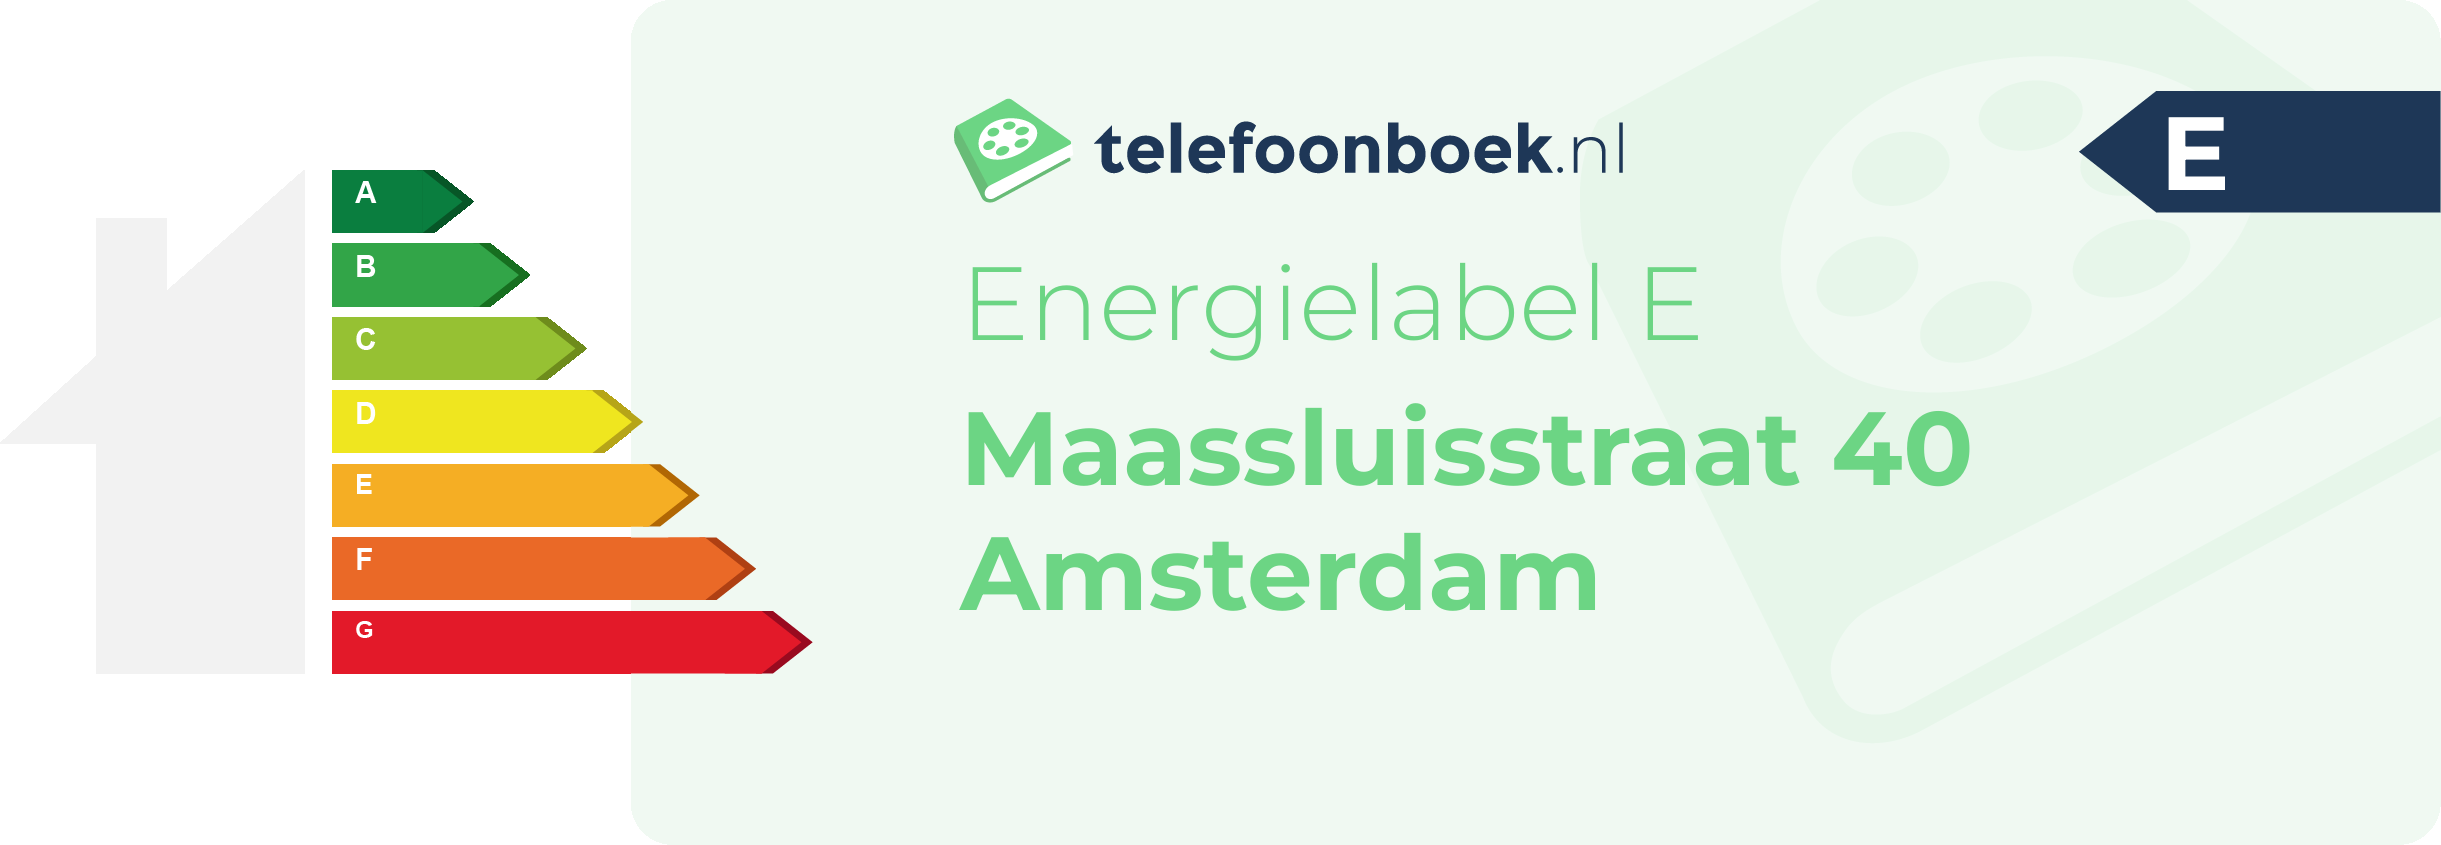 Energielabel Maassluisstraat 40 Amsterdam